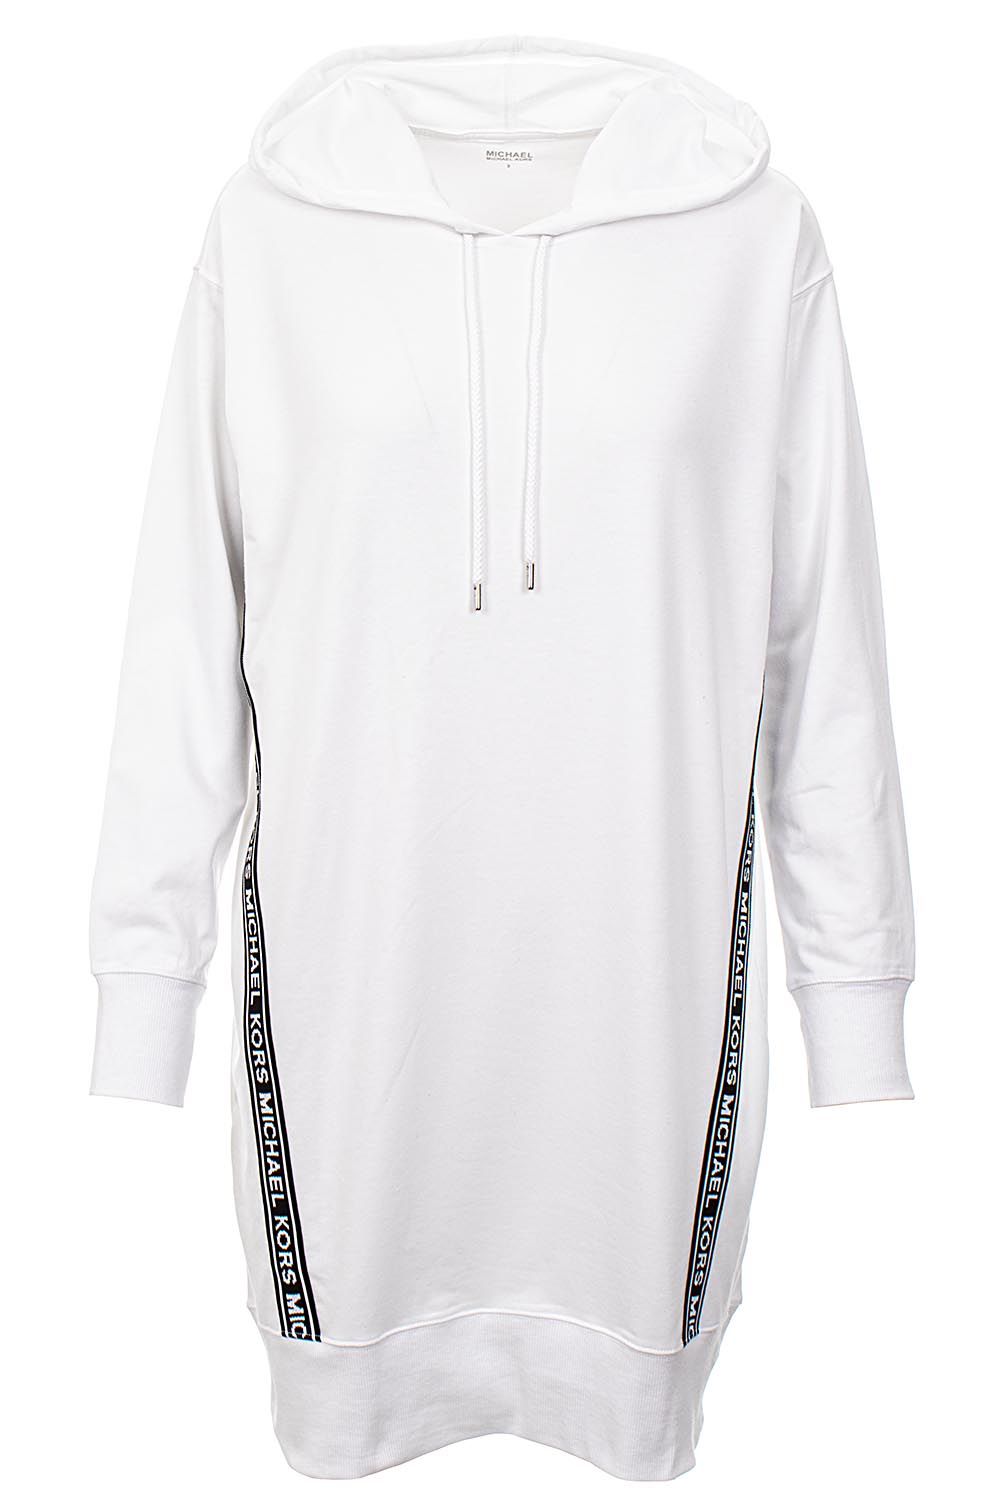 Michael Kors Dámské mikinové šaty s pruhy bílé Velikost: M